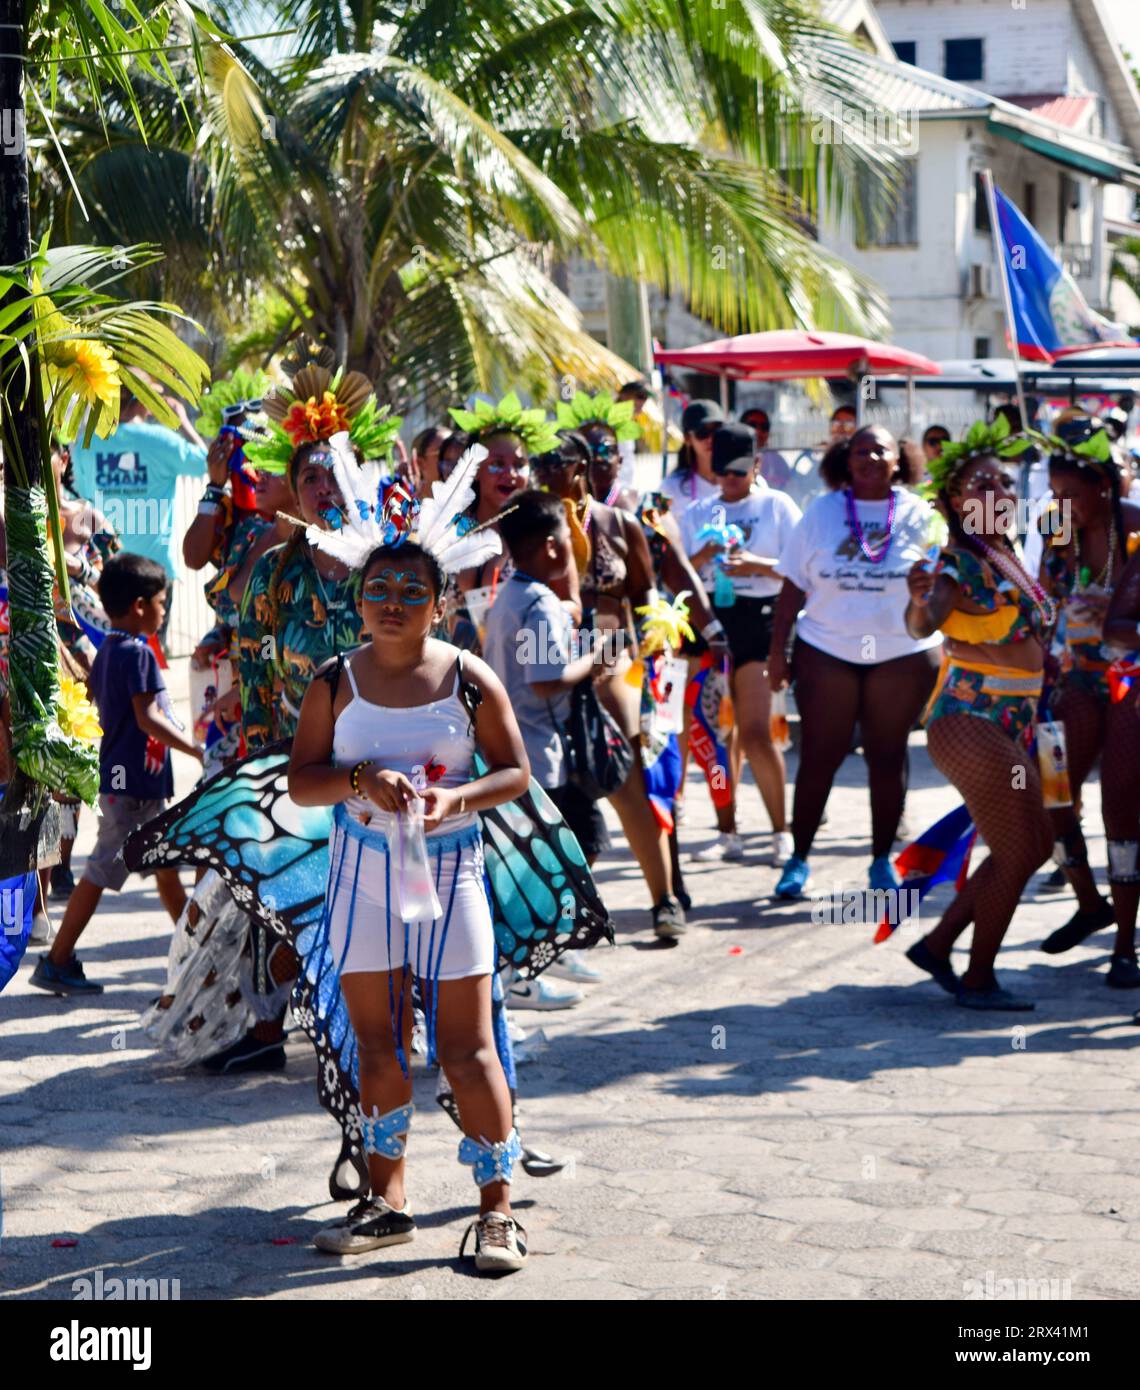 La parata del Carnevale di San Pedro Town del 2023. Gli amanti del Carnevale in costumi colorati che partecipano alla sfilata e ballano a ritmo di musica Foto Stock